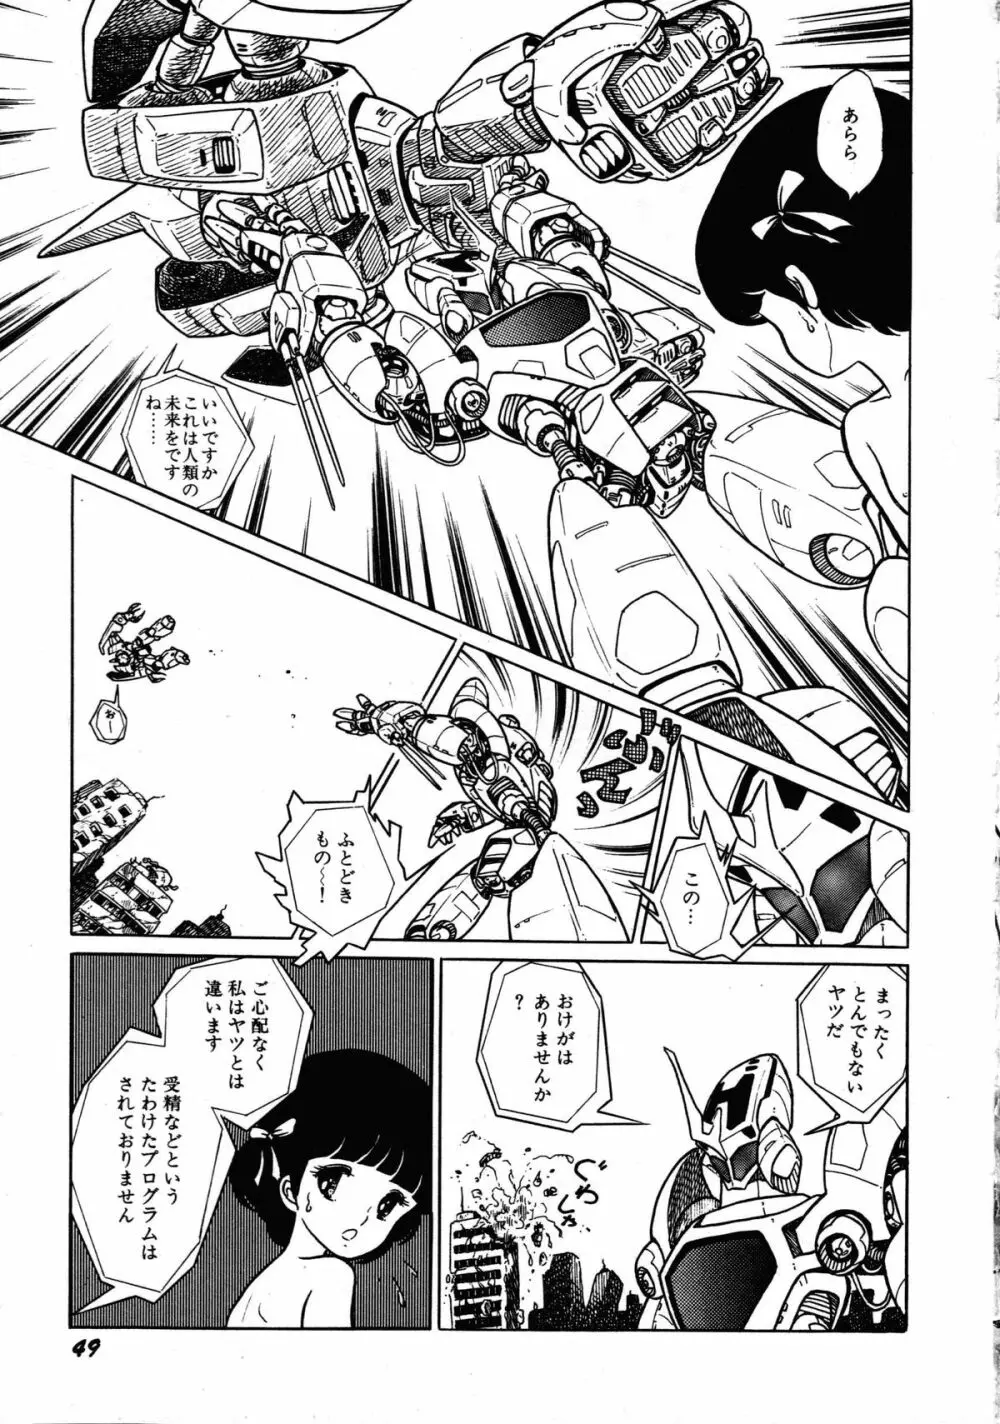 ロボット&美少女傑作選 レモン・ピープル1982-1986 53ページ